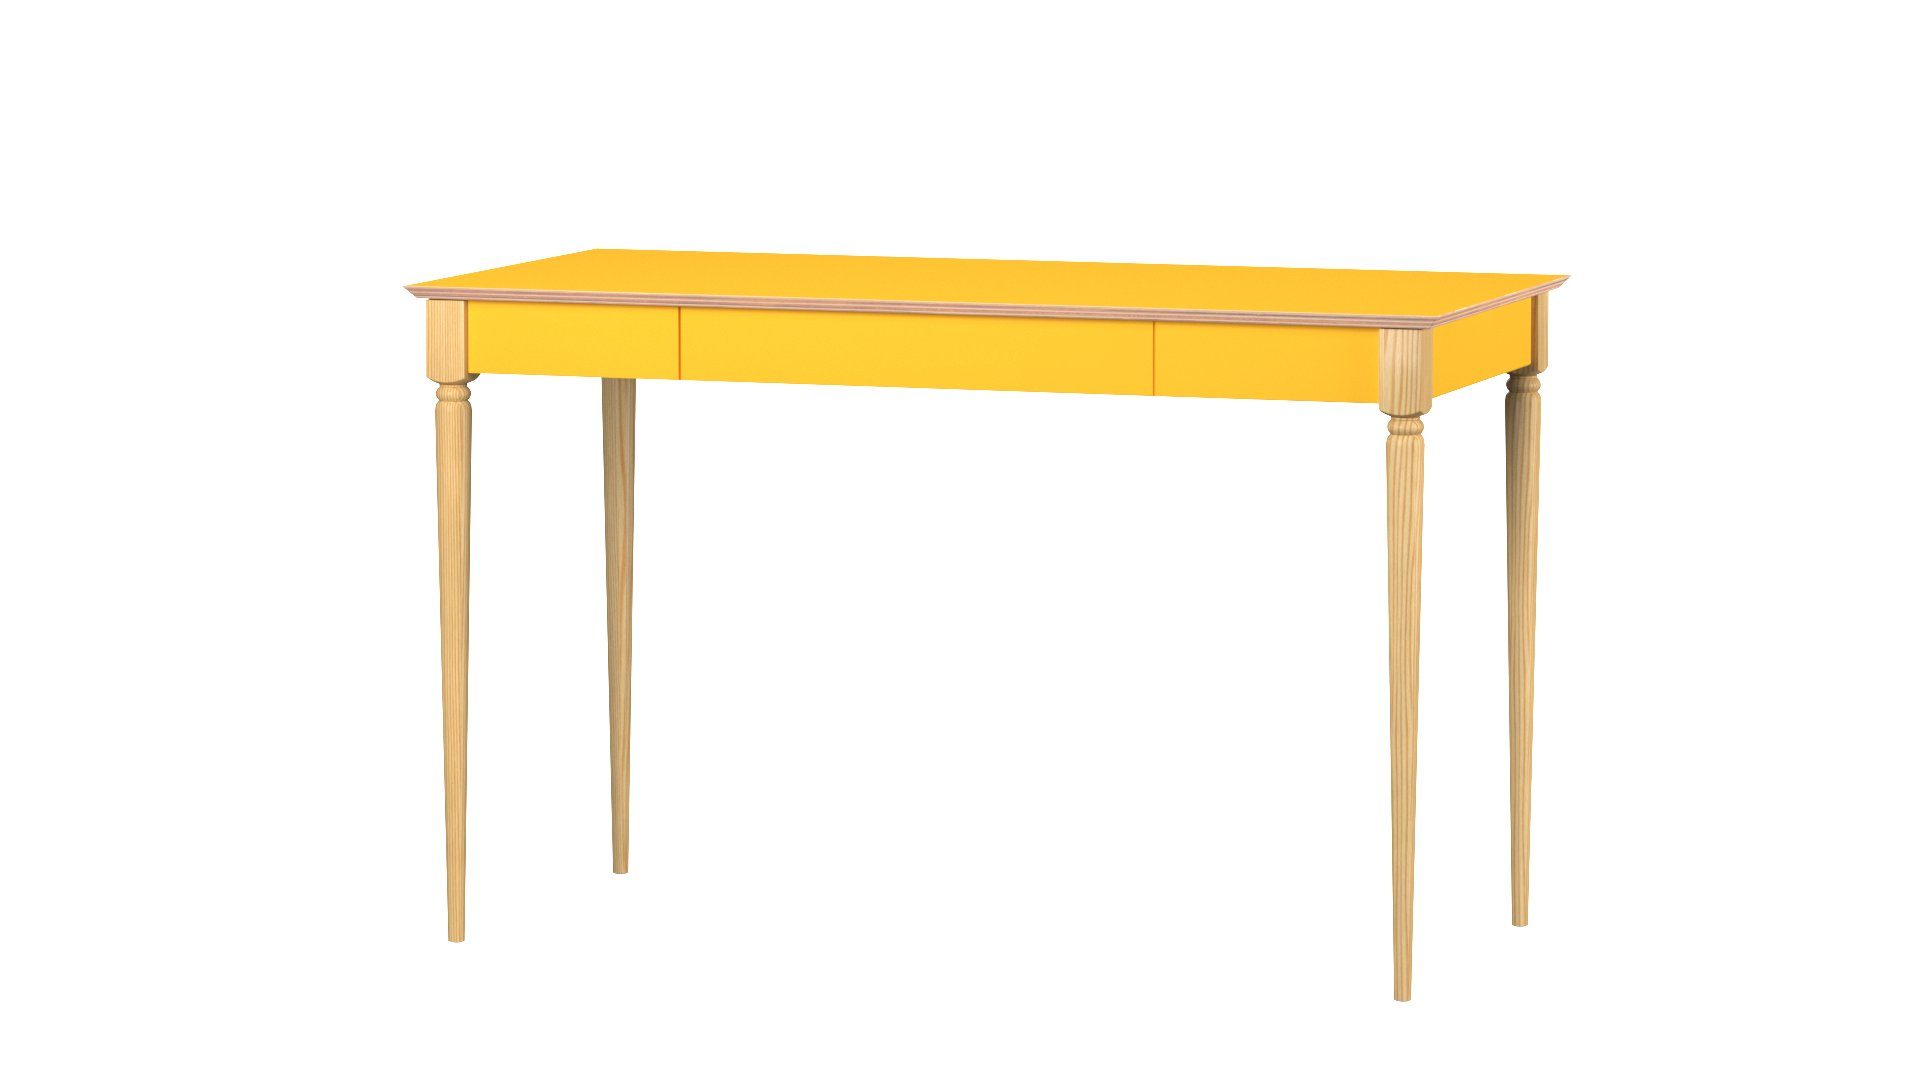 Moderner Schublade) - Schreibtisch Buchenholz Jasmin (Kinderschreibtisch Kinderzimmer Gelb Schublade mit Kinderschreibtisch minimalistisches Birkensperrholz - - mit Schreibtisch - - Jasmin Siblo Design - Jugendzimmer